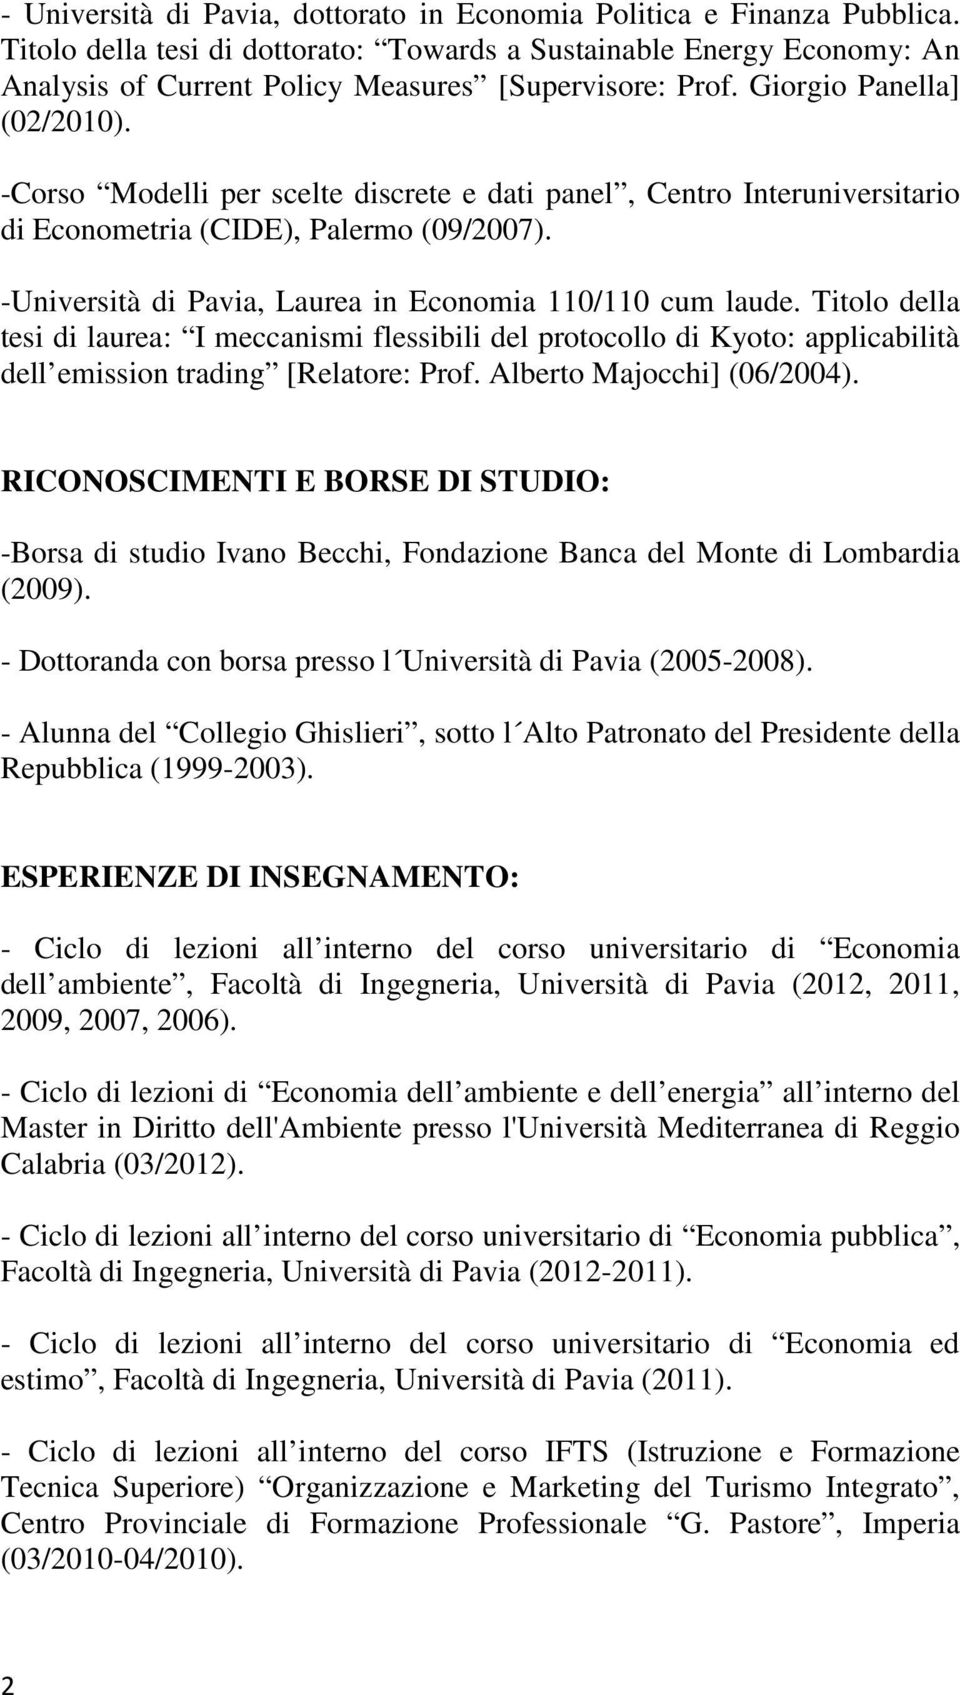 -Corso Modelli per scelte discrete e dati panel, Centro Interuniversitario di Econometria (CIDE), Palermo (09/2007). -Università di Pavia, Laurea in Economia 110/110 cum laude.